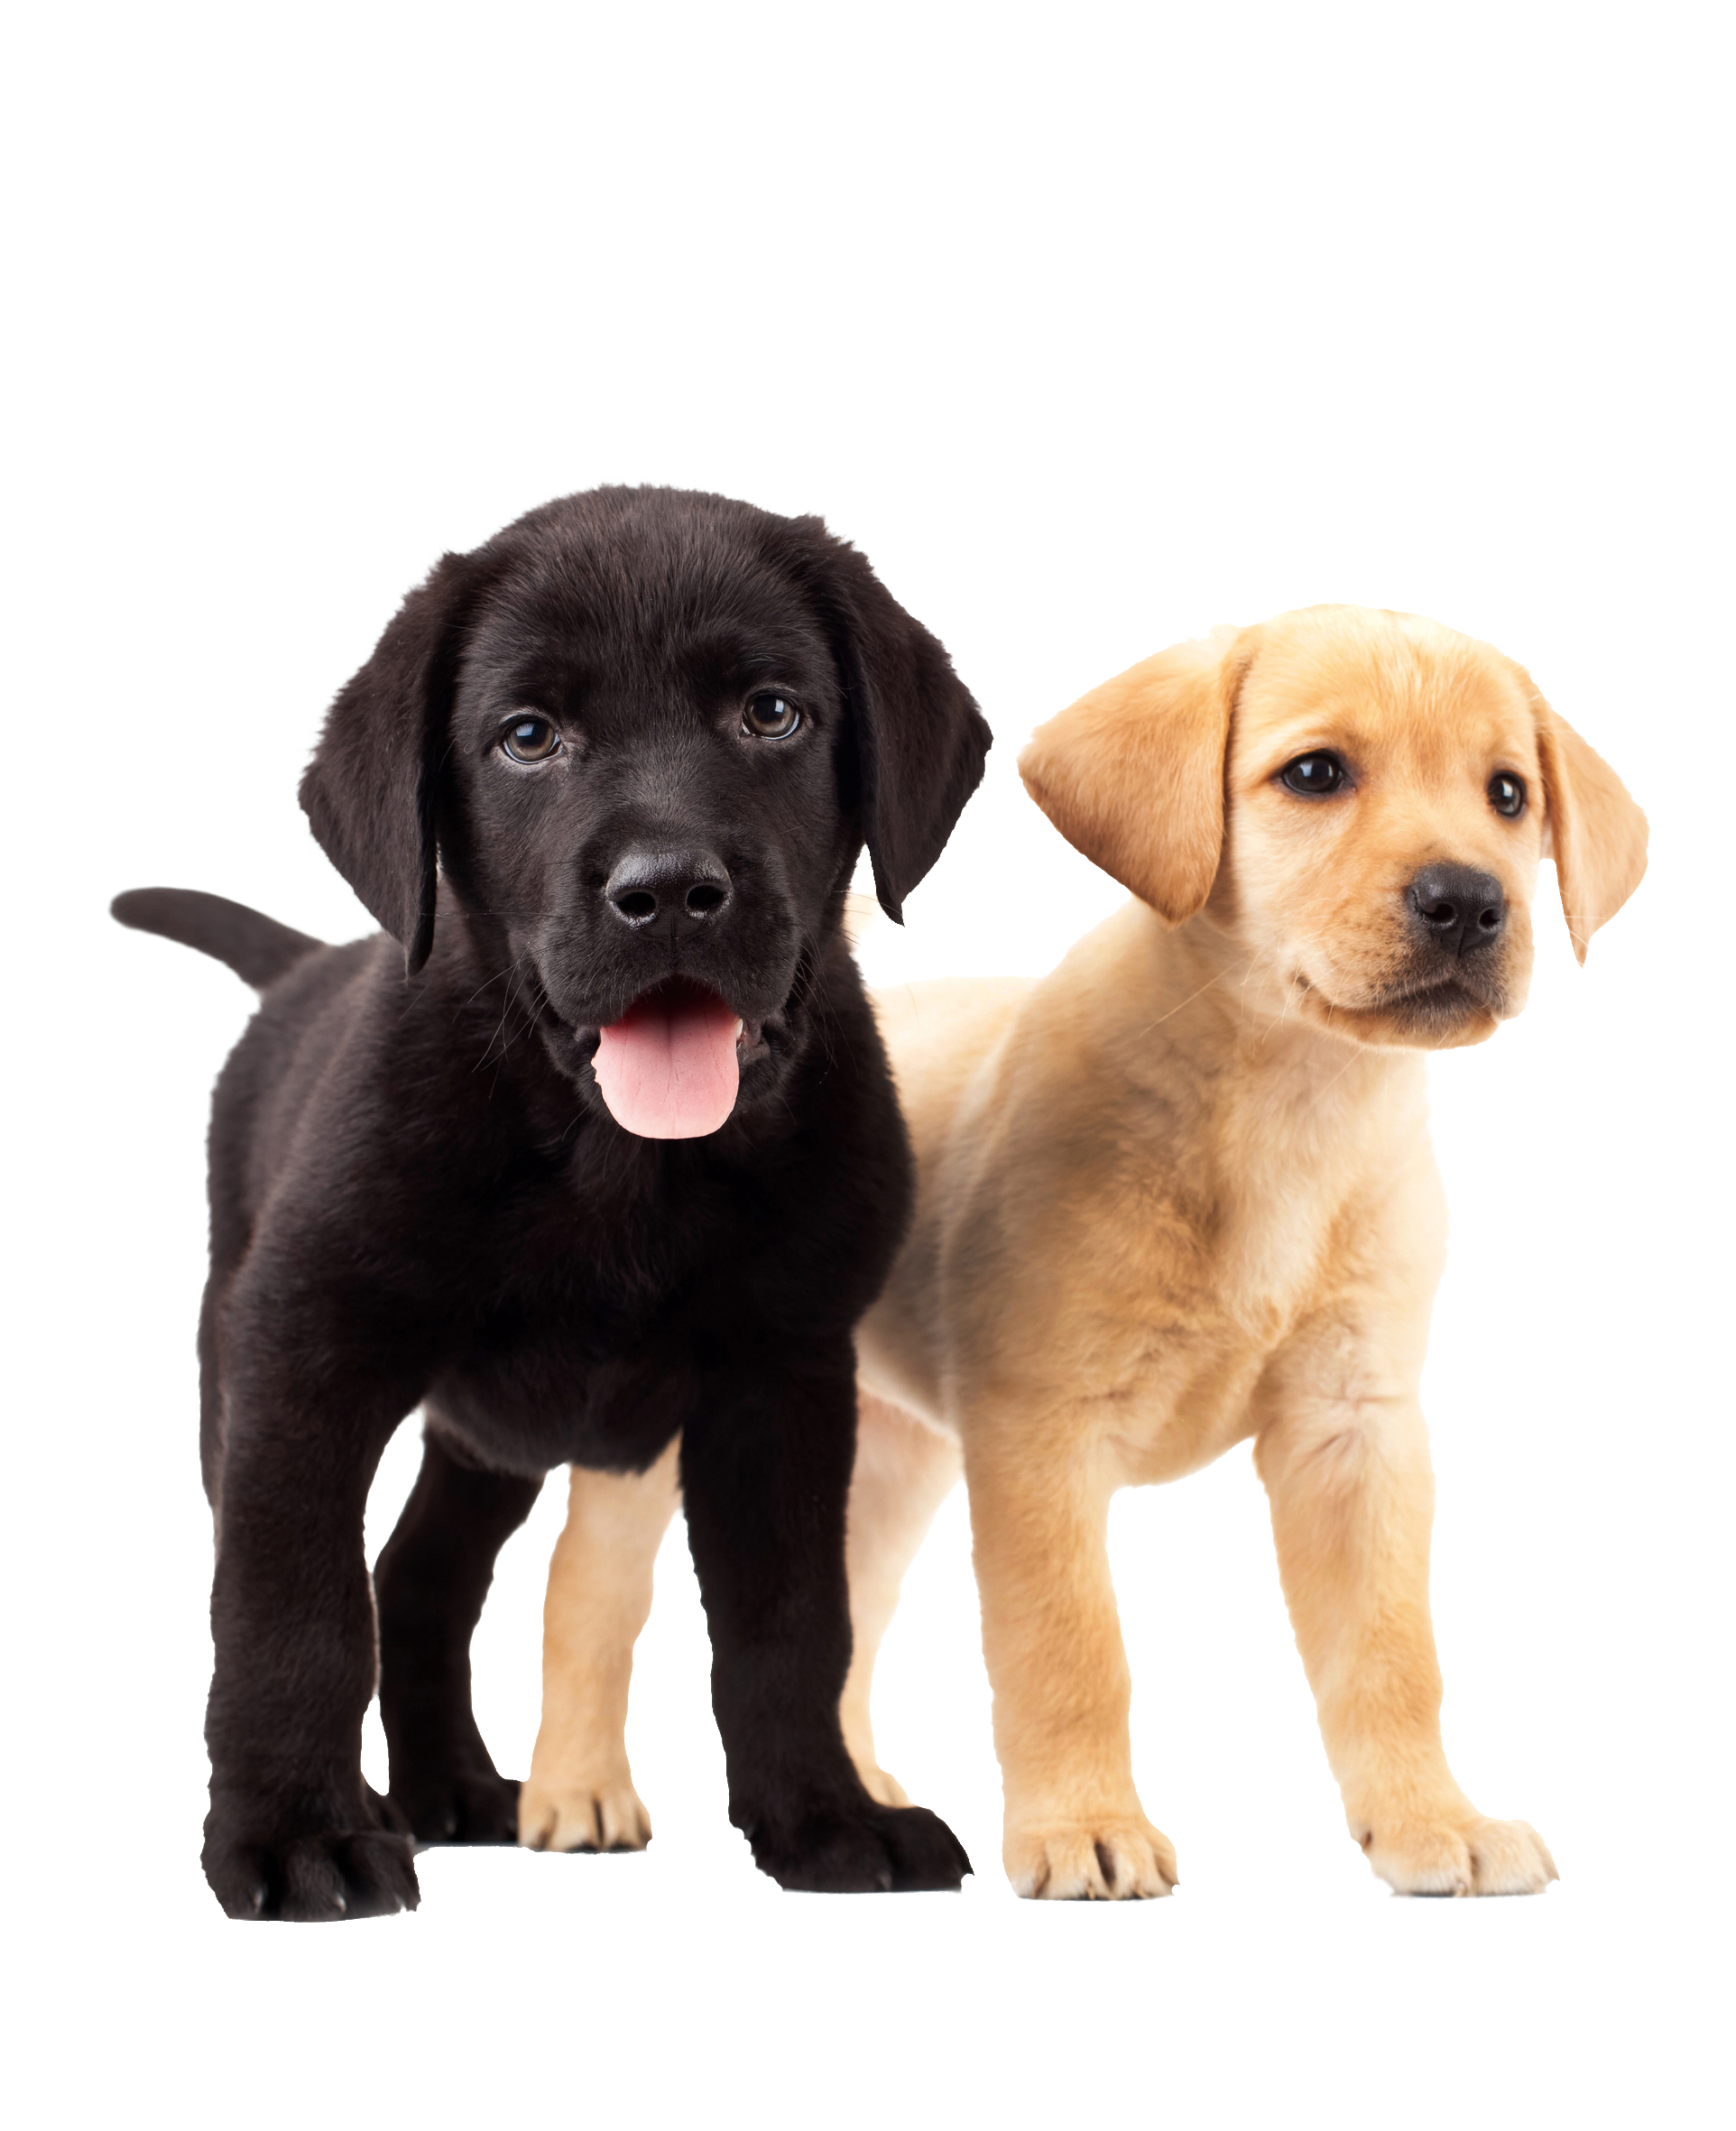 Ein schwarzer und ein beiger Labradorwelpe stehen nebeneinander